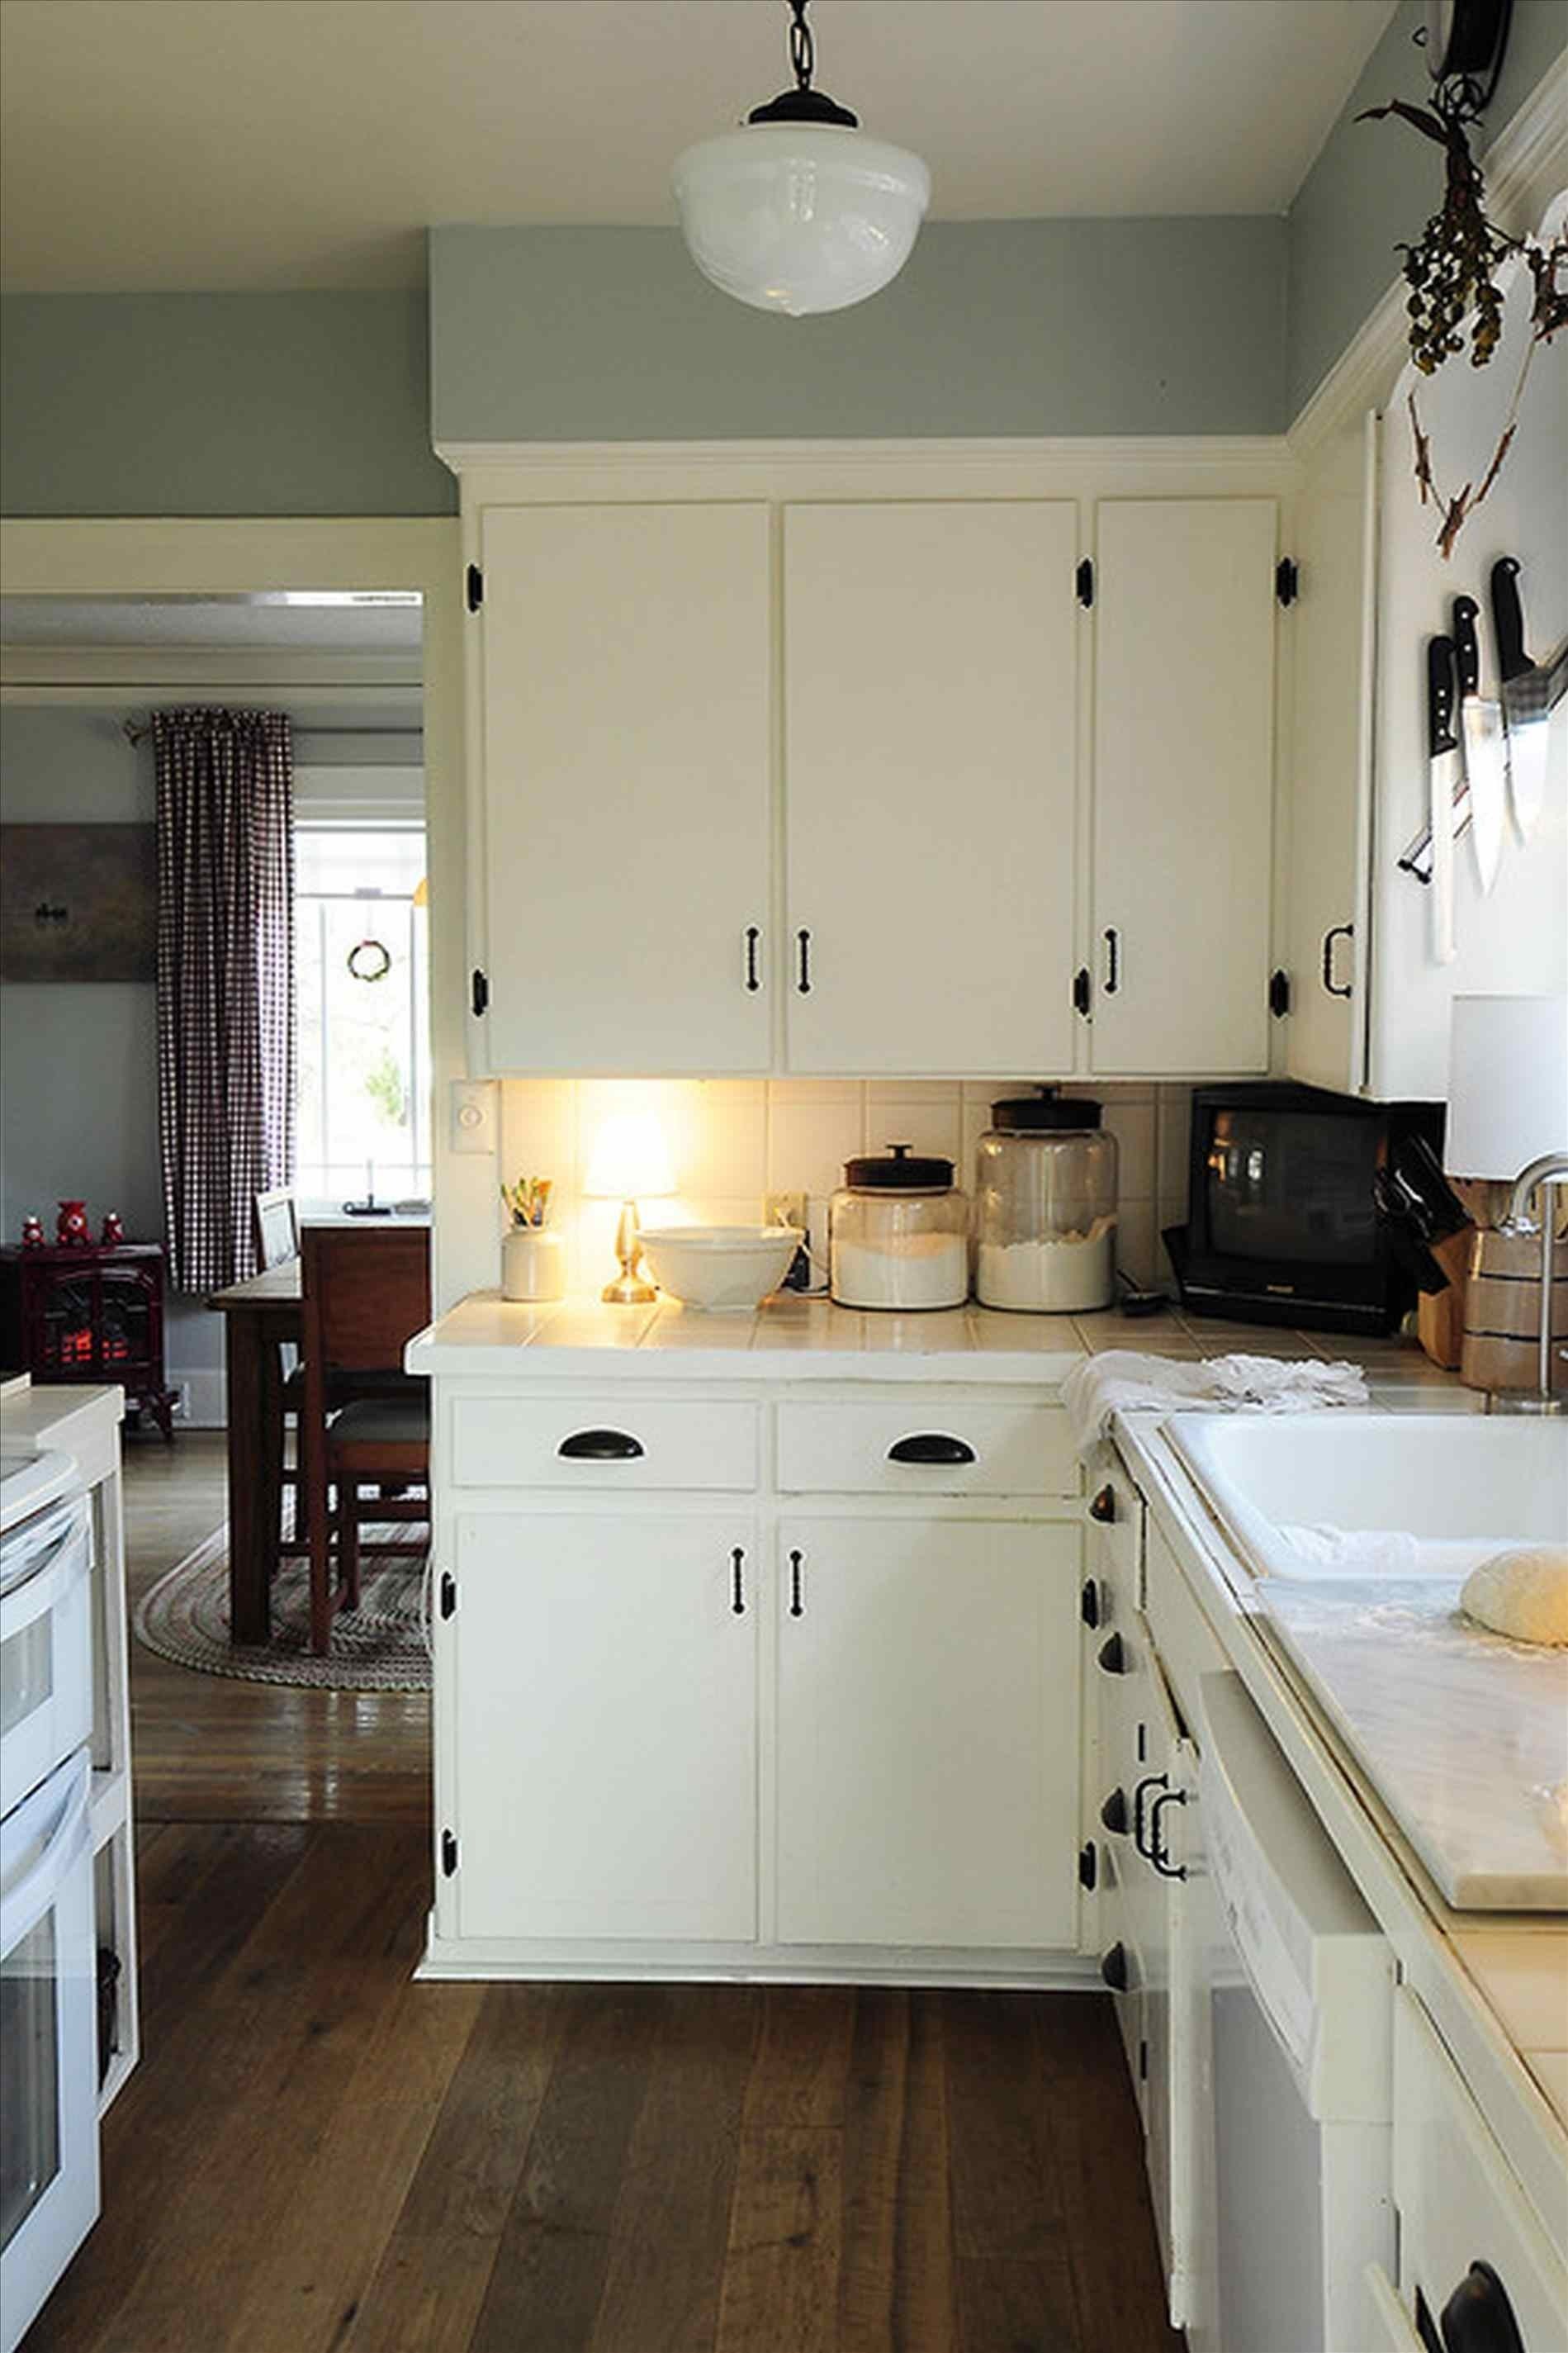 10 Fashionable Kitchen Tile Backsplash Ideas With White Cabinets white backsplash subway tile kitchen backsplash pictures white 2023